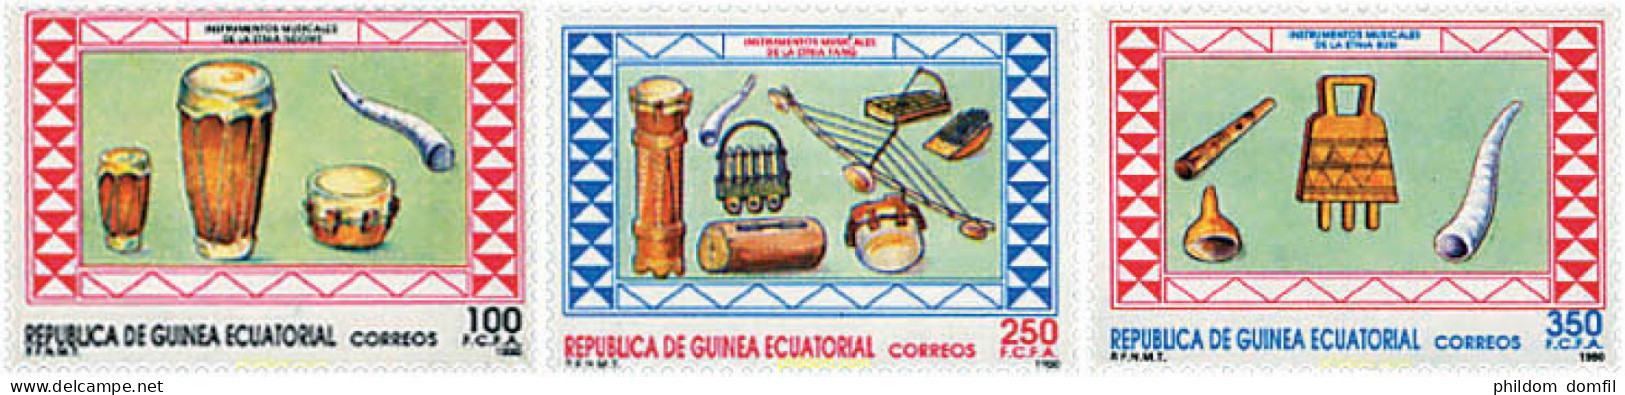 37619 MNH GUINEA ECUATORIAL 1990 INSTRUMENTOS DE MUSICA - Guinée Equatoriale